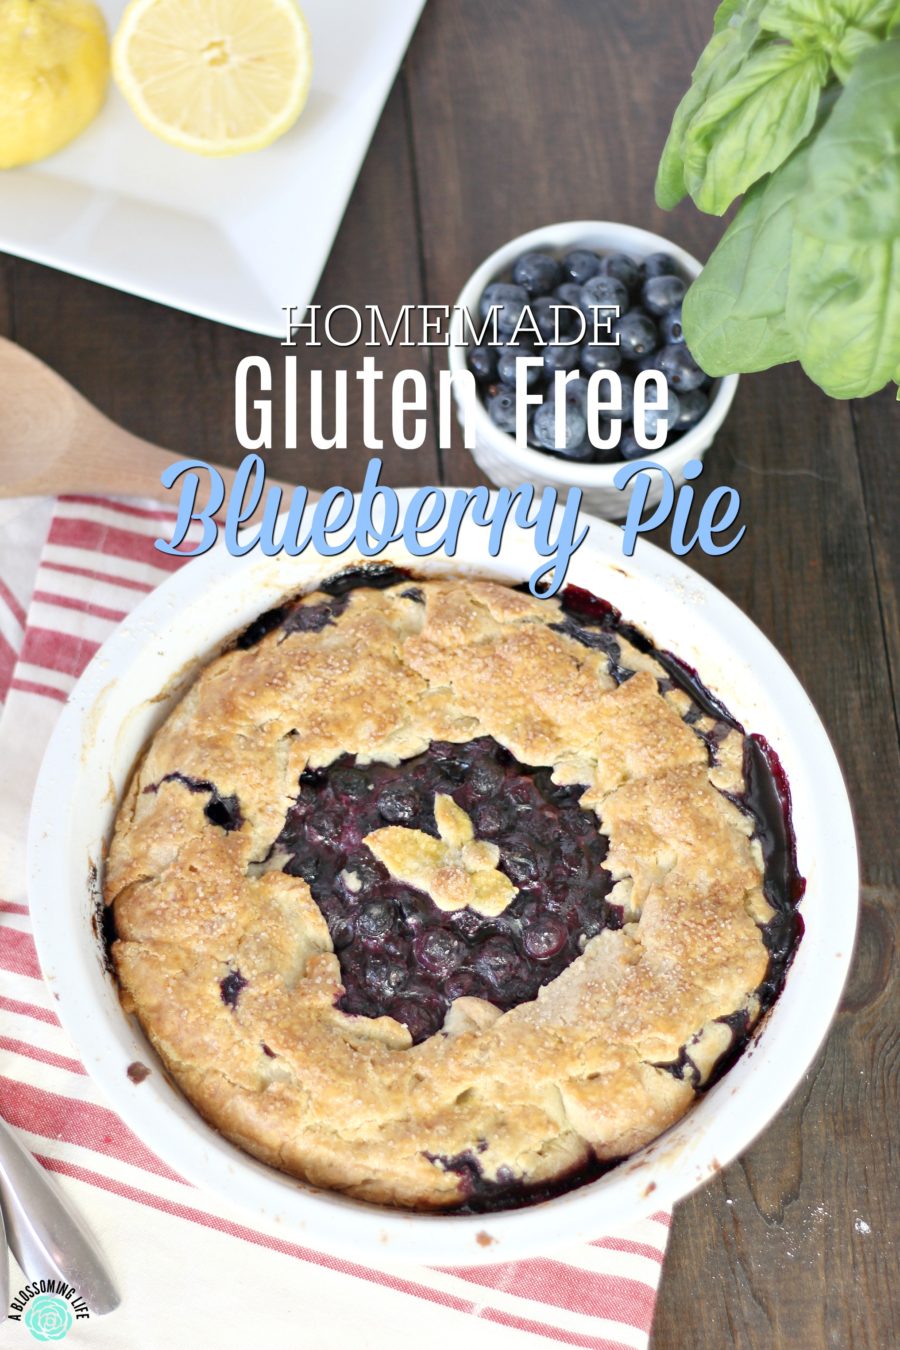 Homemade Gluten Free Blueberry Pie